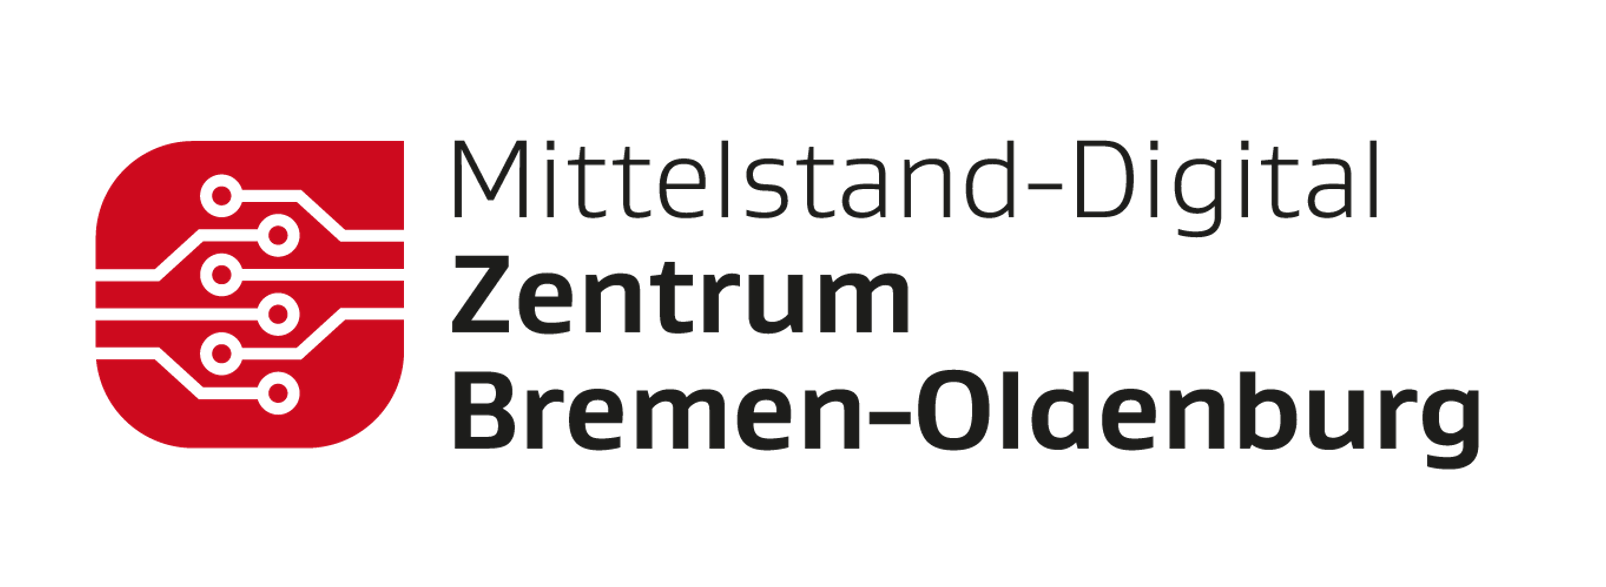 Mittelstand-Digital Zentrum Bremen-Oldenburg